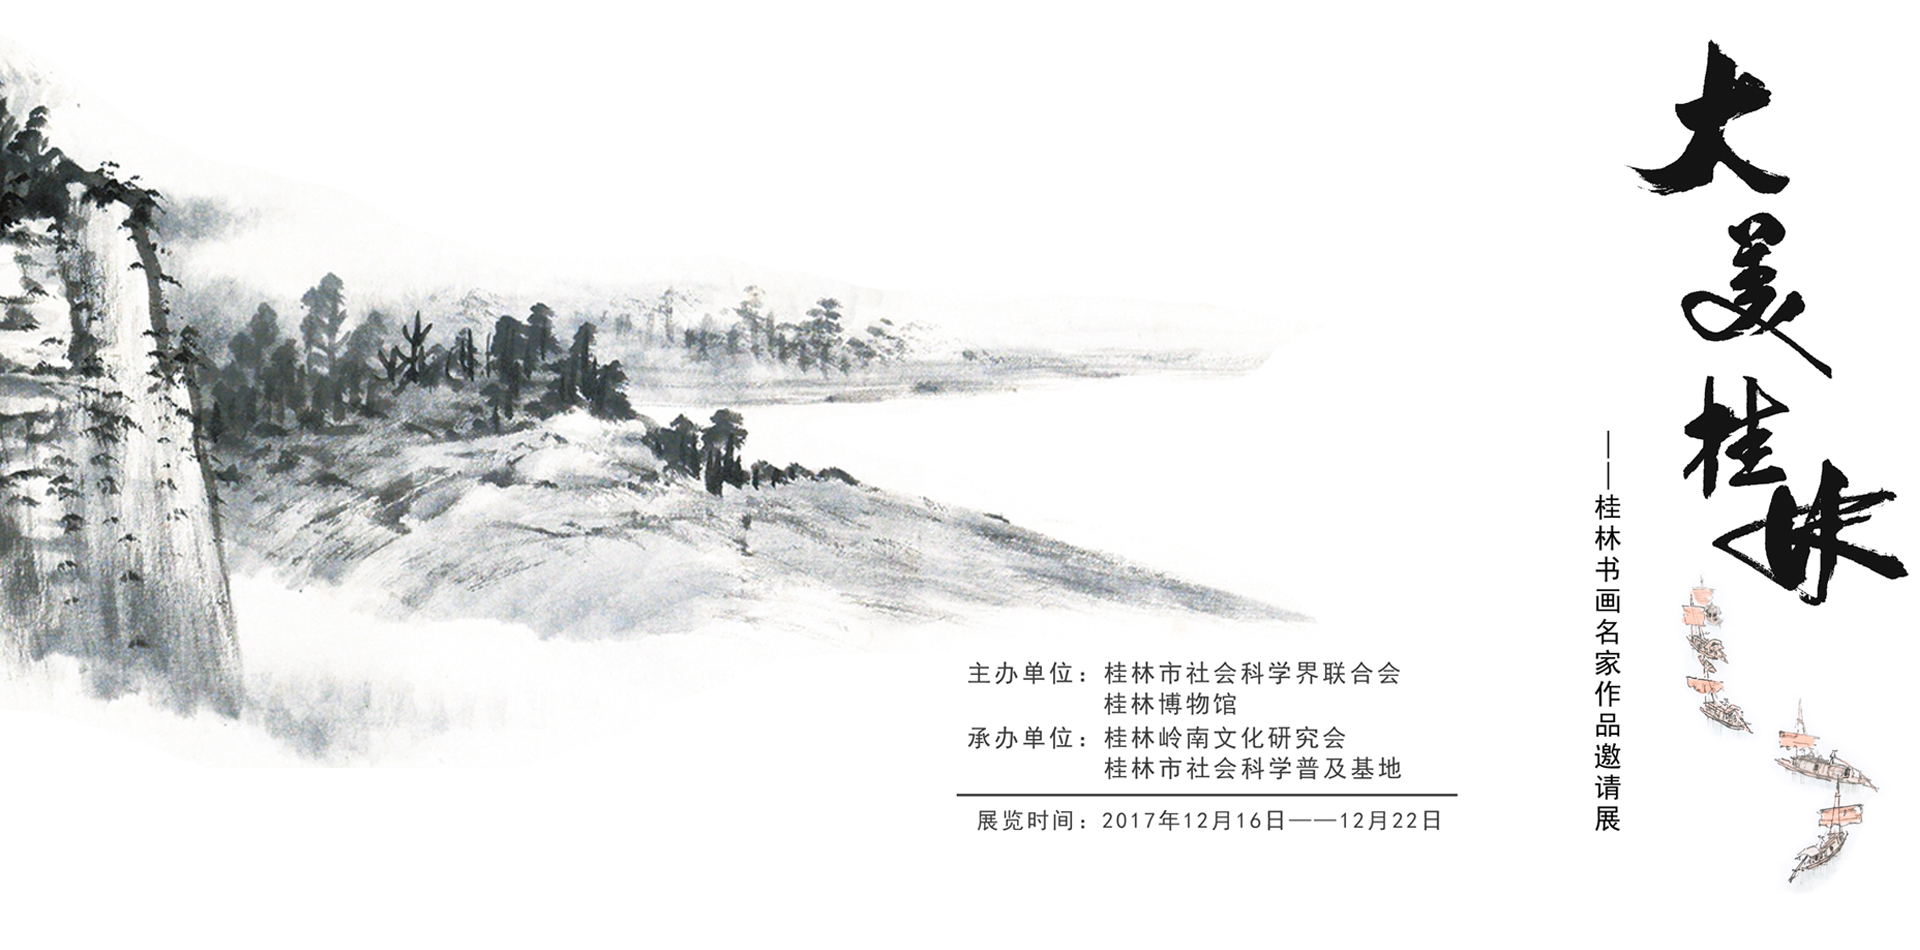 90,000+张最精彩的“桂林”图片 · 100%免费下载 · Pexels素材图片